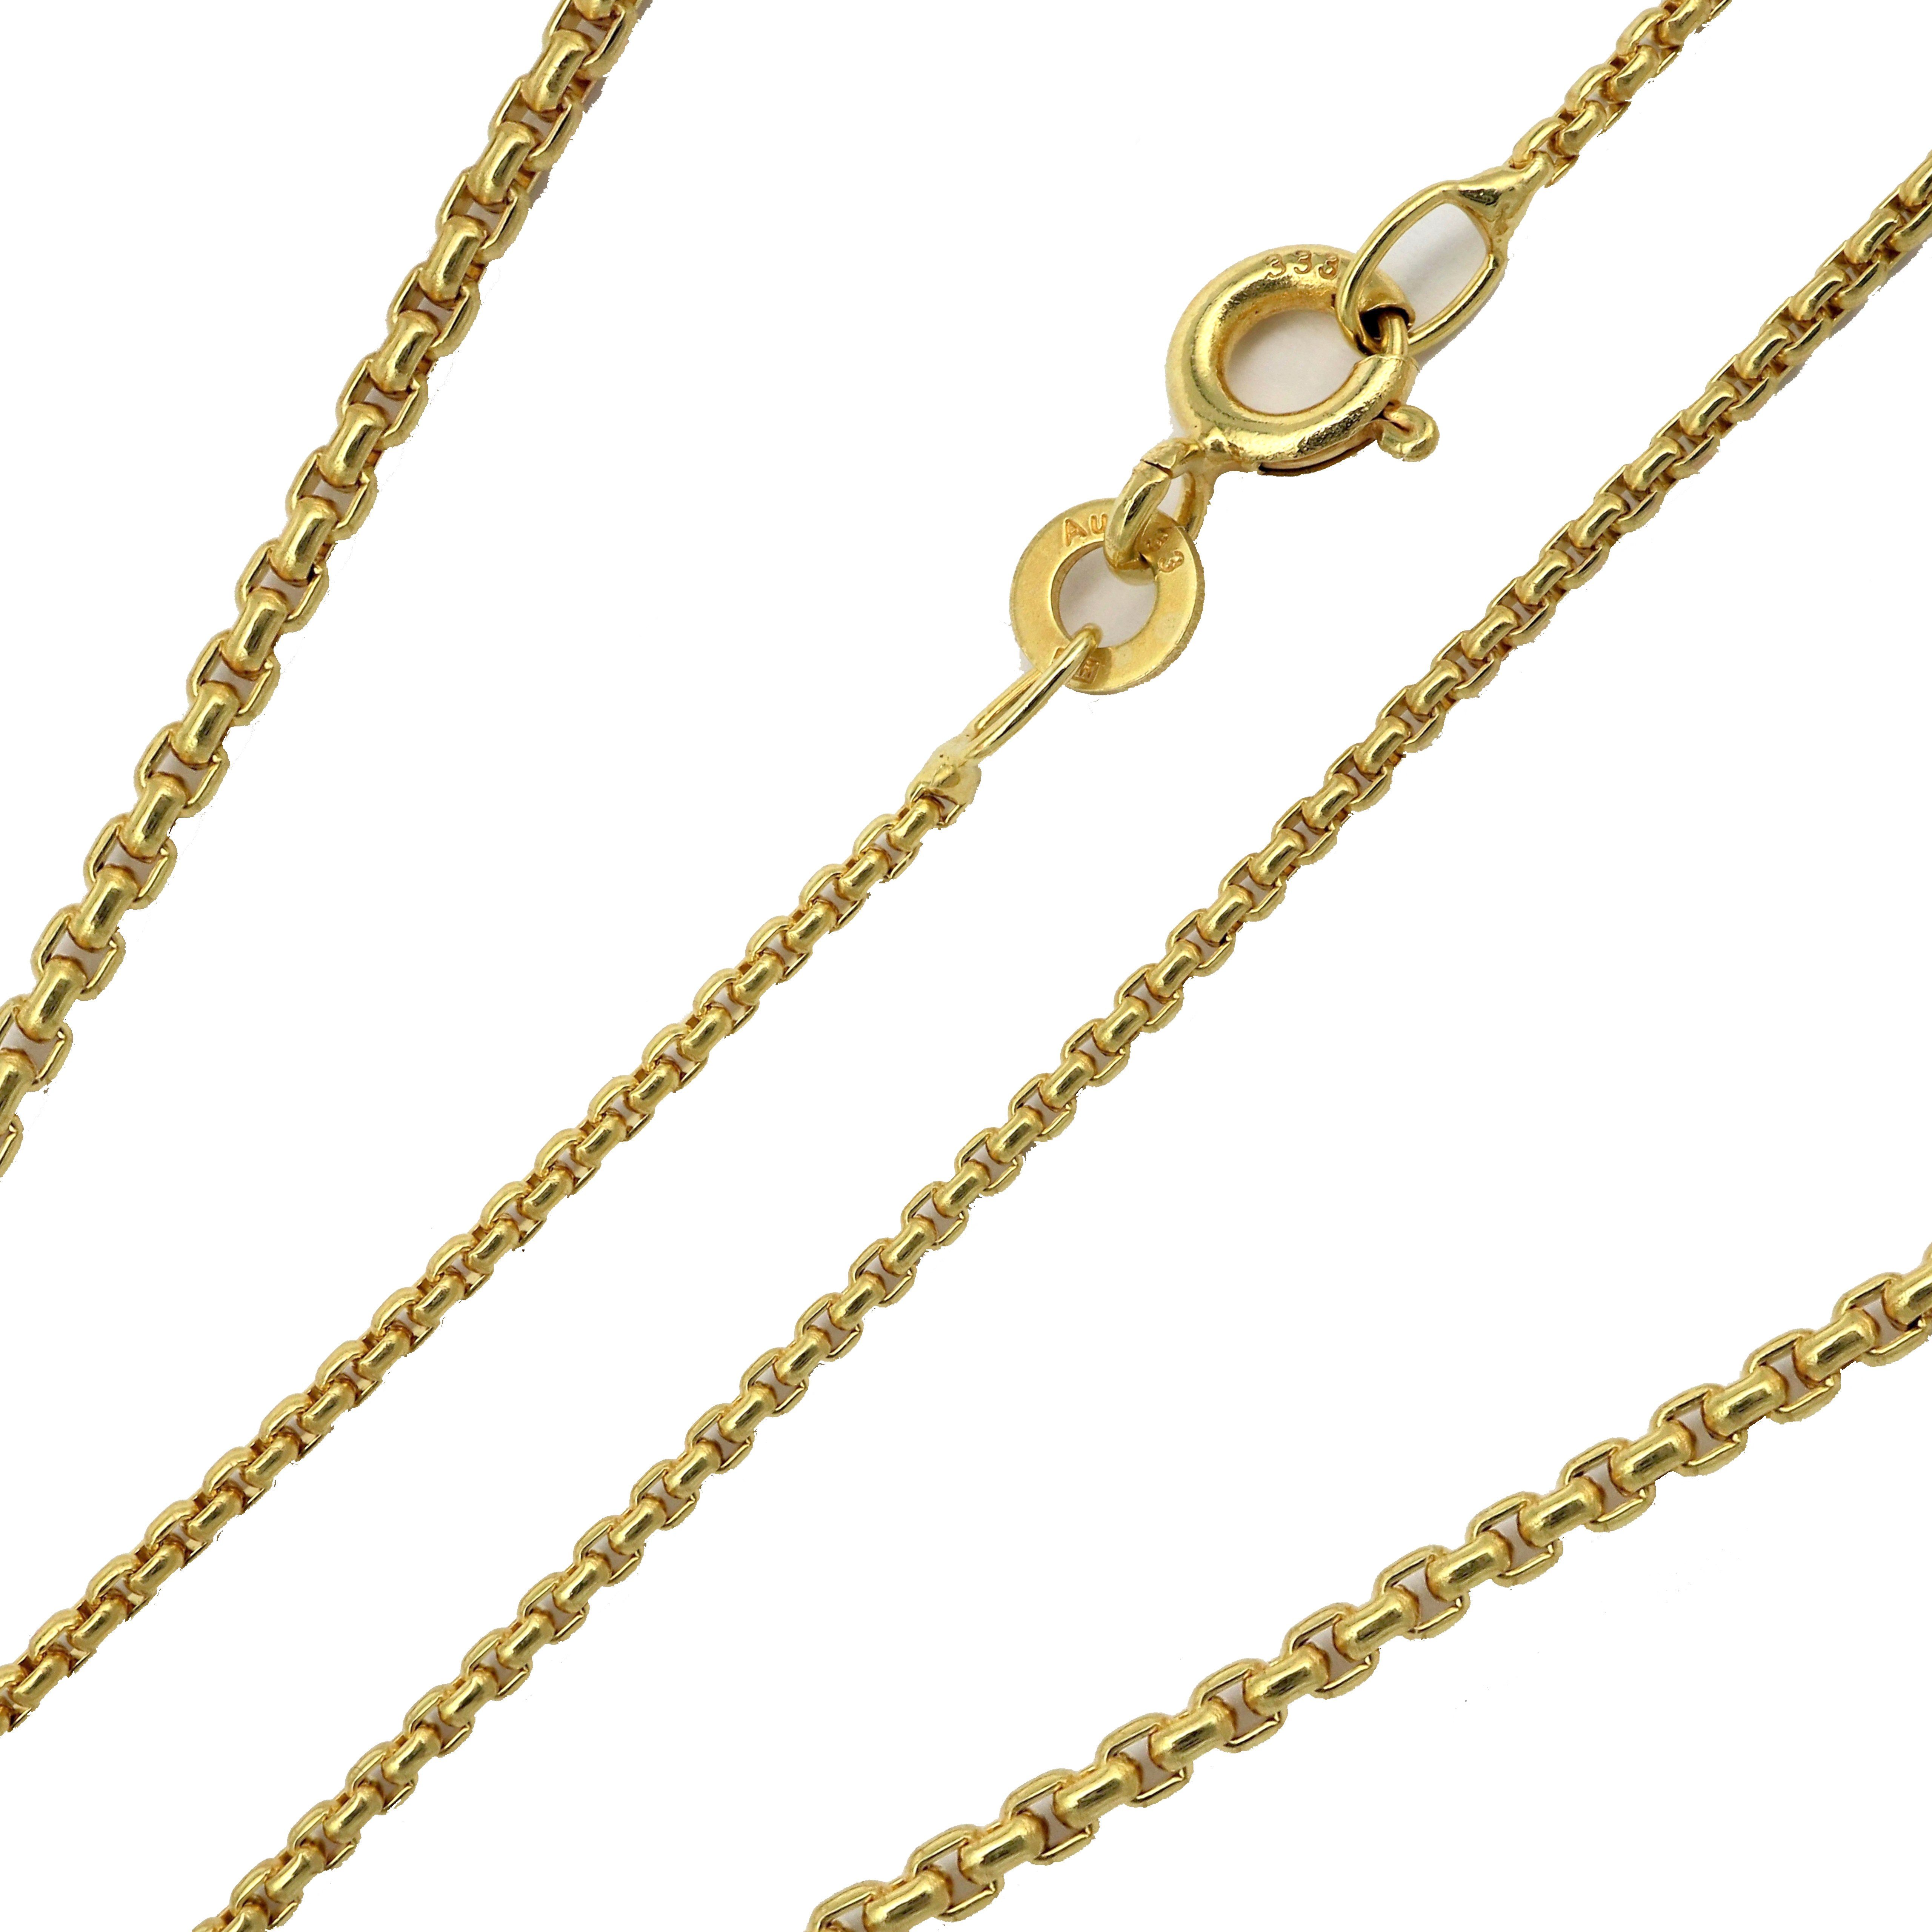 G & J Collier Venezianerkette rund 333 8K Gold 0,77mm 45cm hochwertige Halskette, Made in Germany | Ketten ohne Anhänger